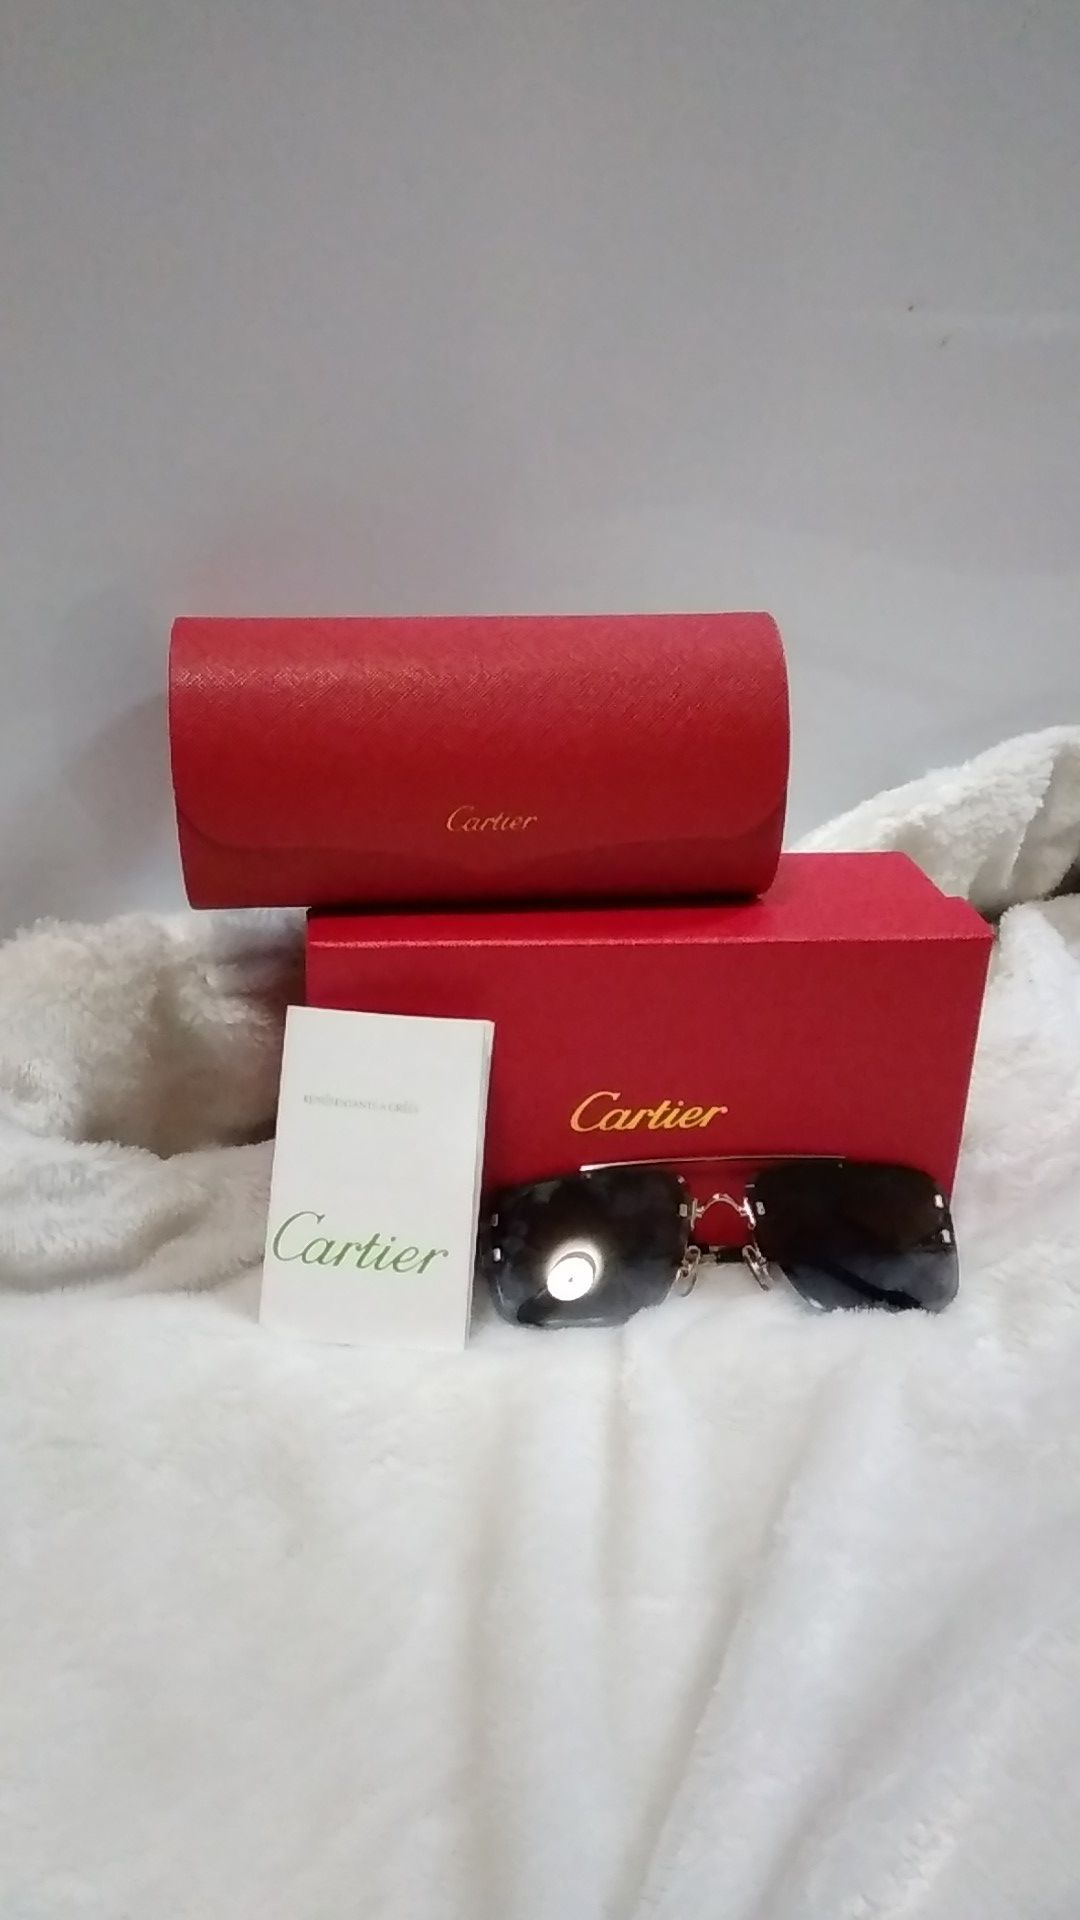 Cartier Rimless Sunglasses, Silver and Blue Lens.